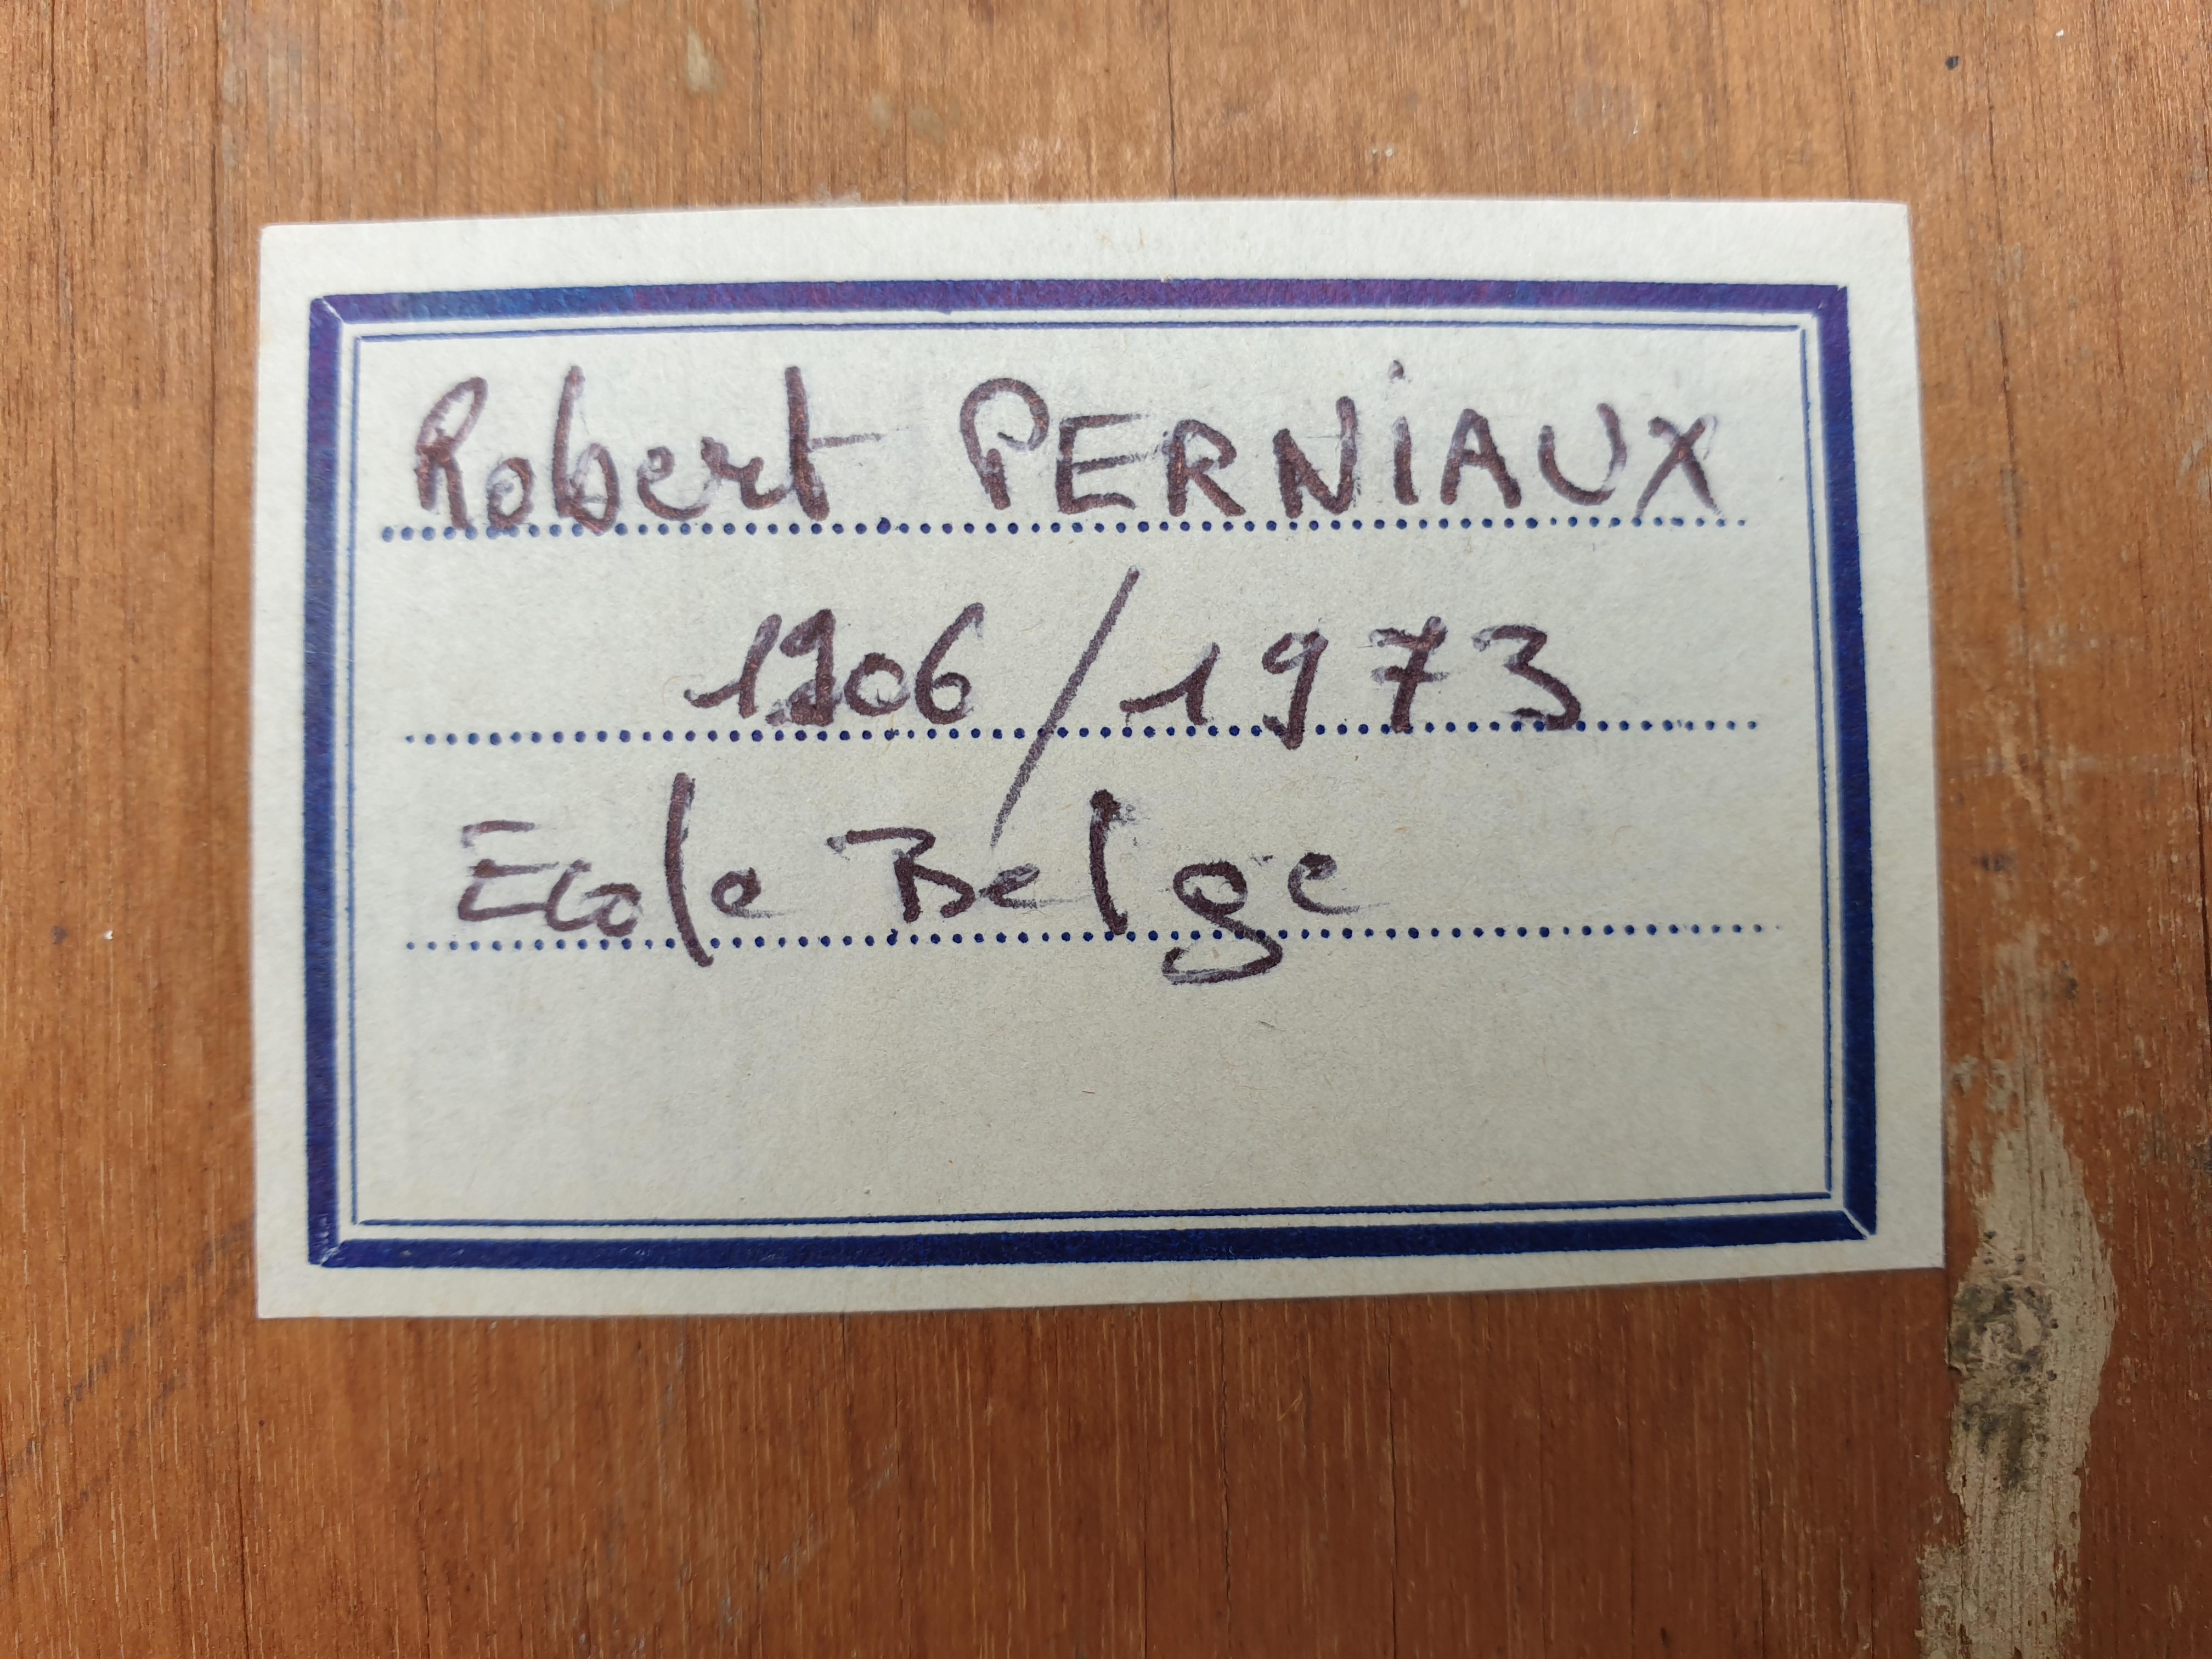 Huile sur panneau du milieu du siècle de Robert Perniaux, artiste belge, signée et datée 1952 en bas à droite.

Robert Perniaux , né à Grez-Doiceau en 1906 et mort en 1973, est un architecte, peintre, céramiste et illustrateur belge. Il a suivi une